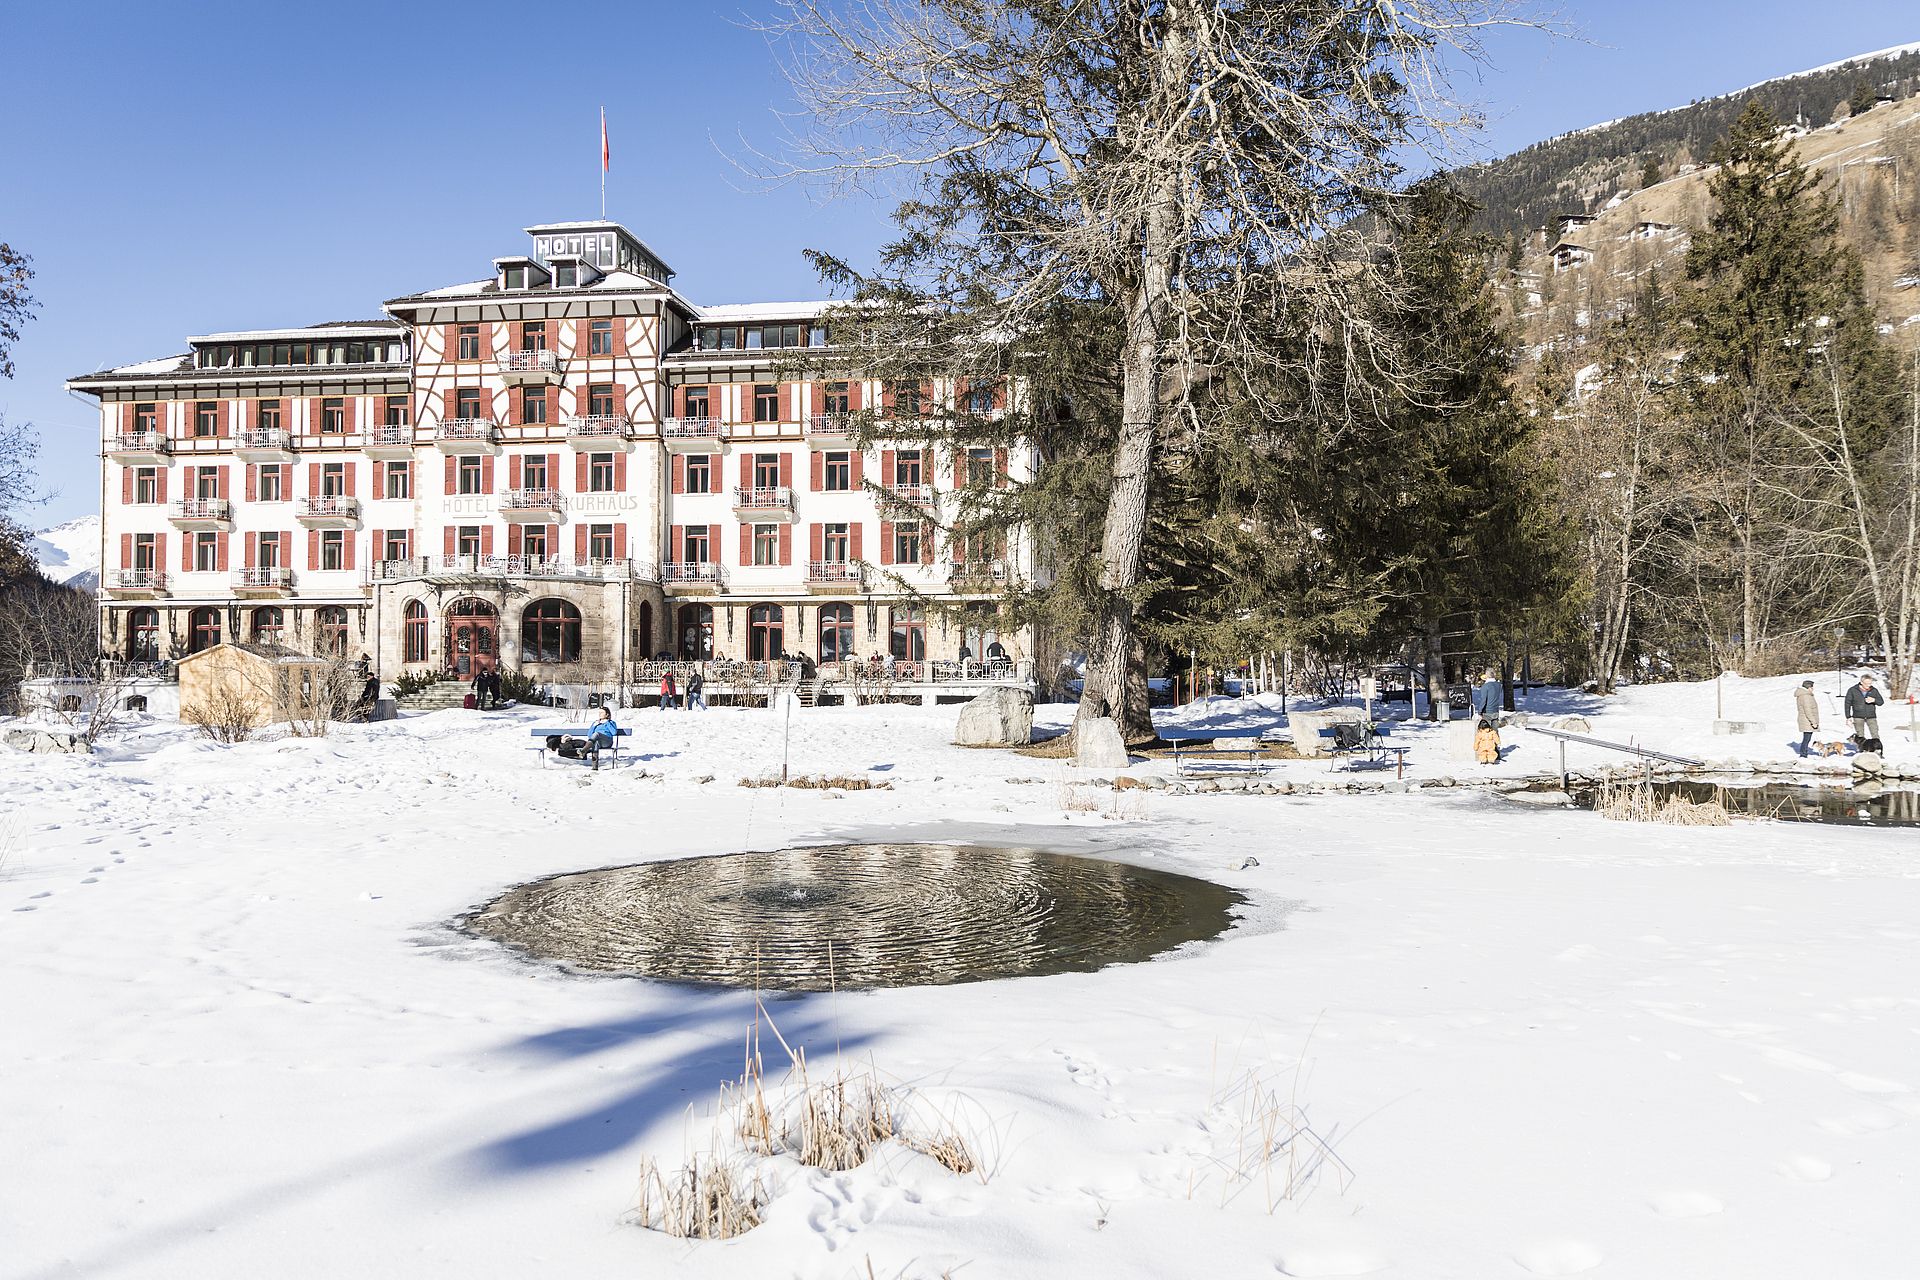 Het 'deftige' Kurhaus in Bergün blijkt een gezellig familiehotel te zijn